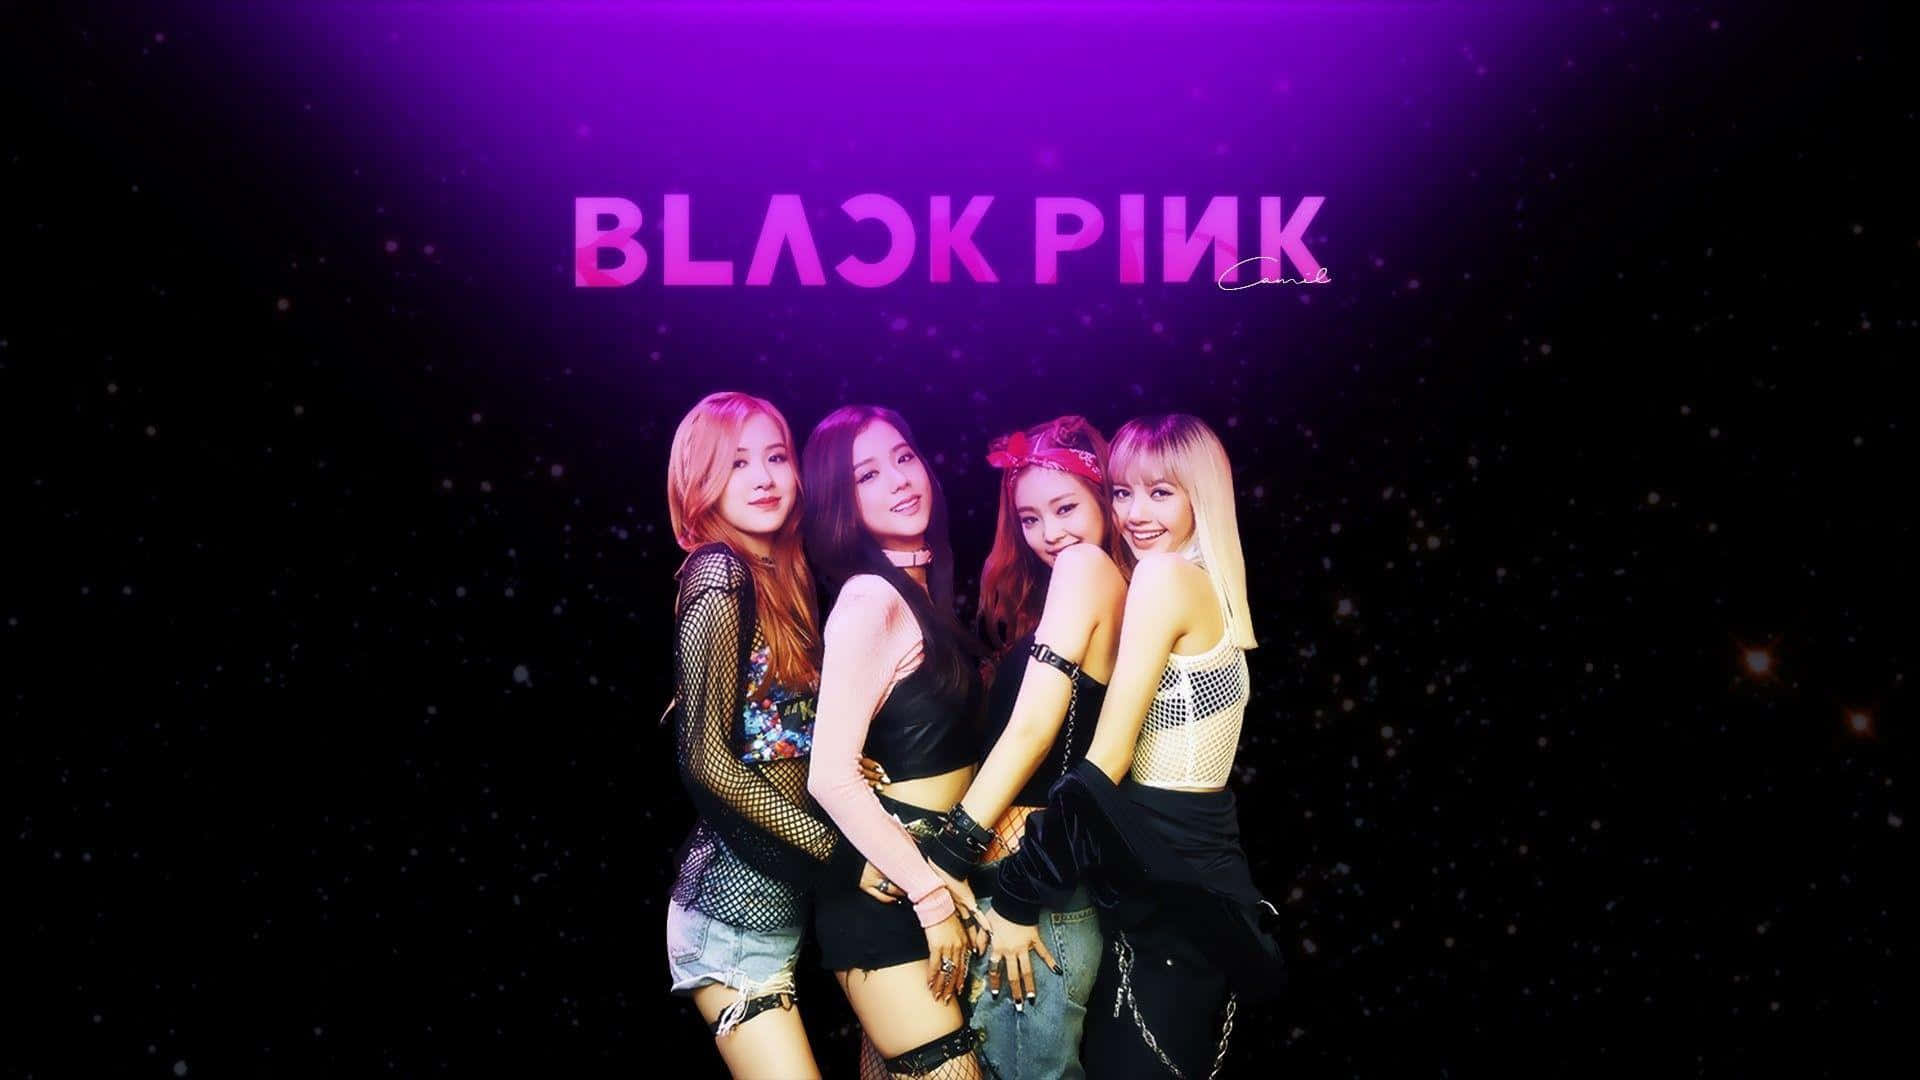 BLACKPINK Wallpapers on Twitter  Blackpink fashion, Black pink, Blackpink